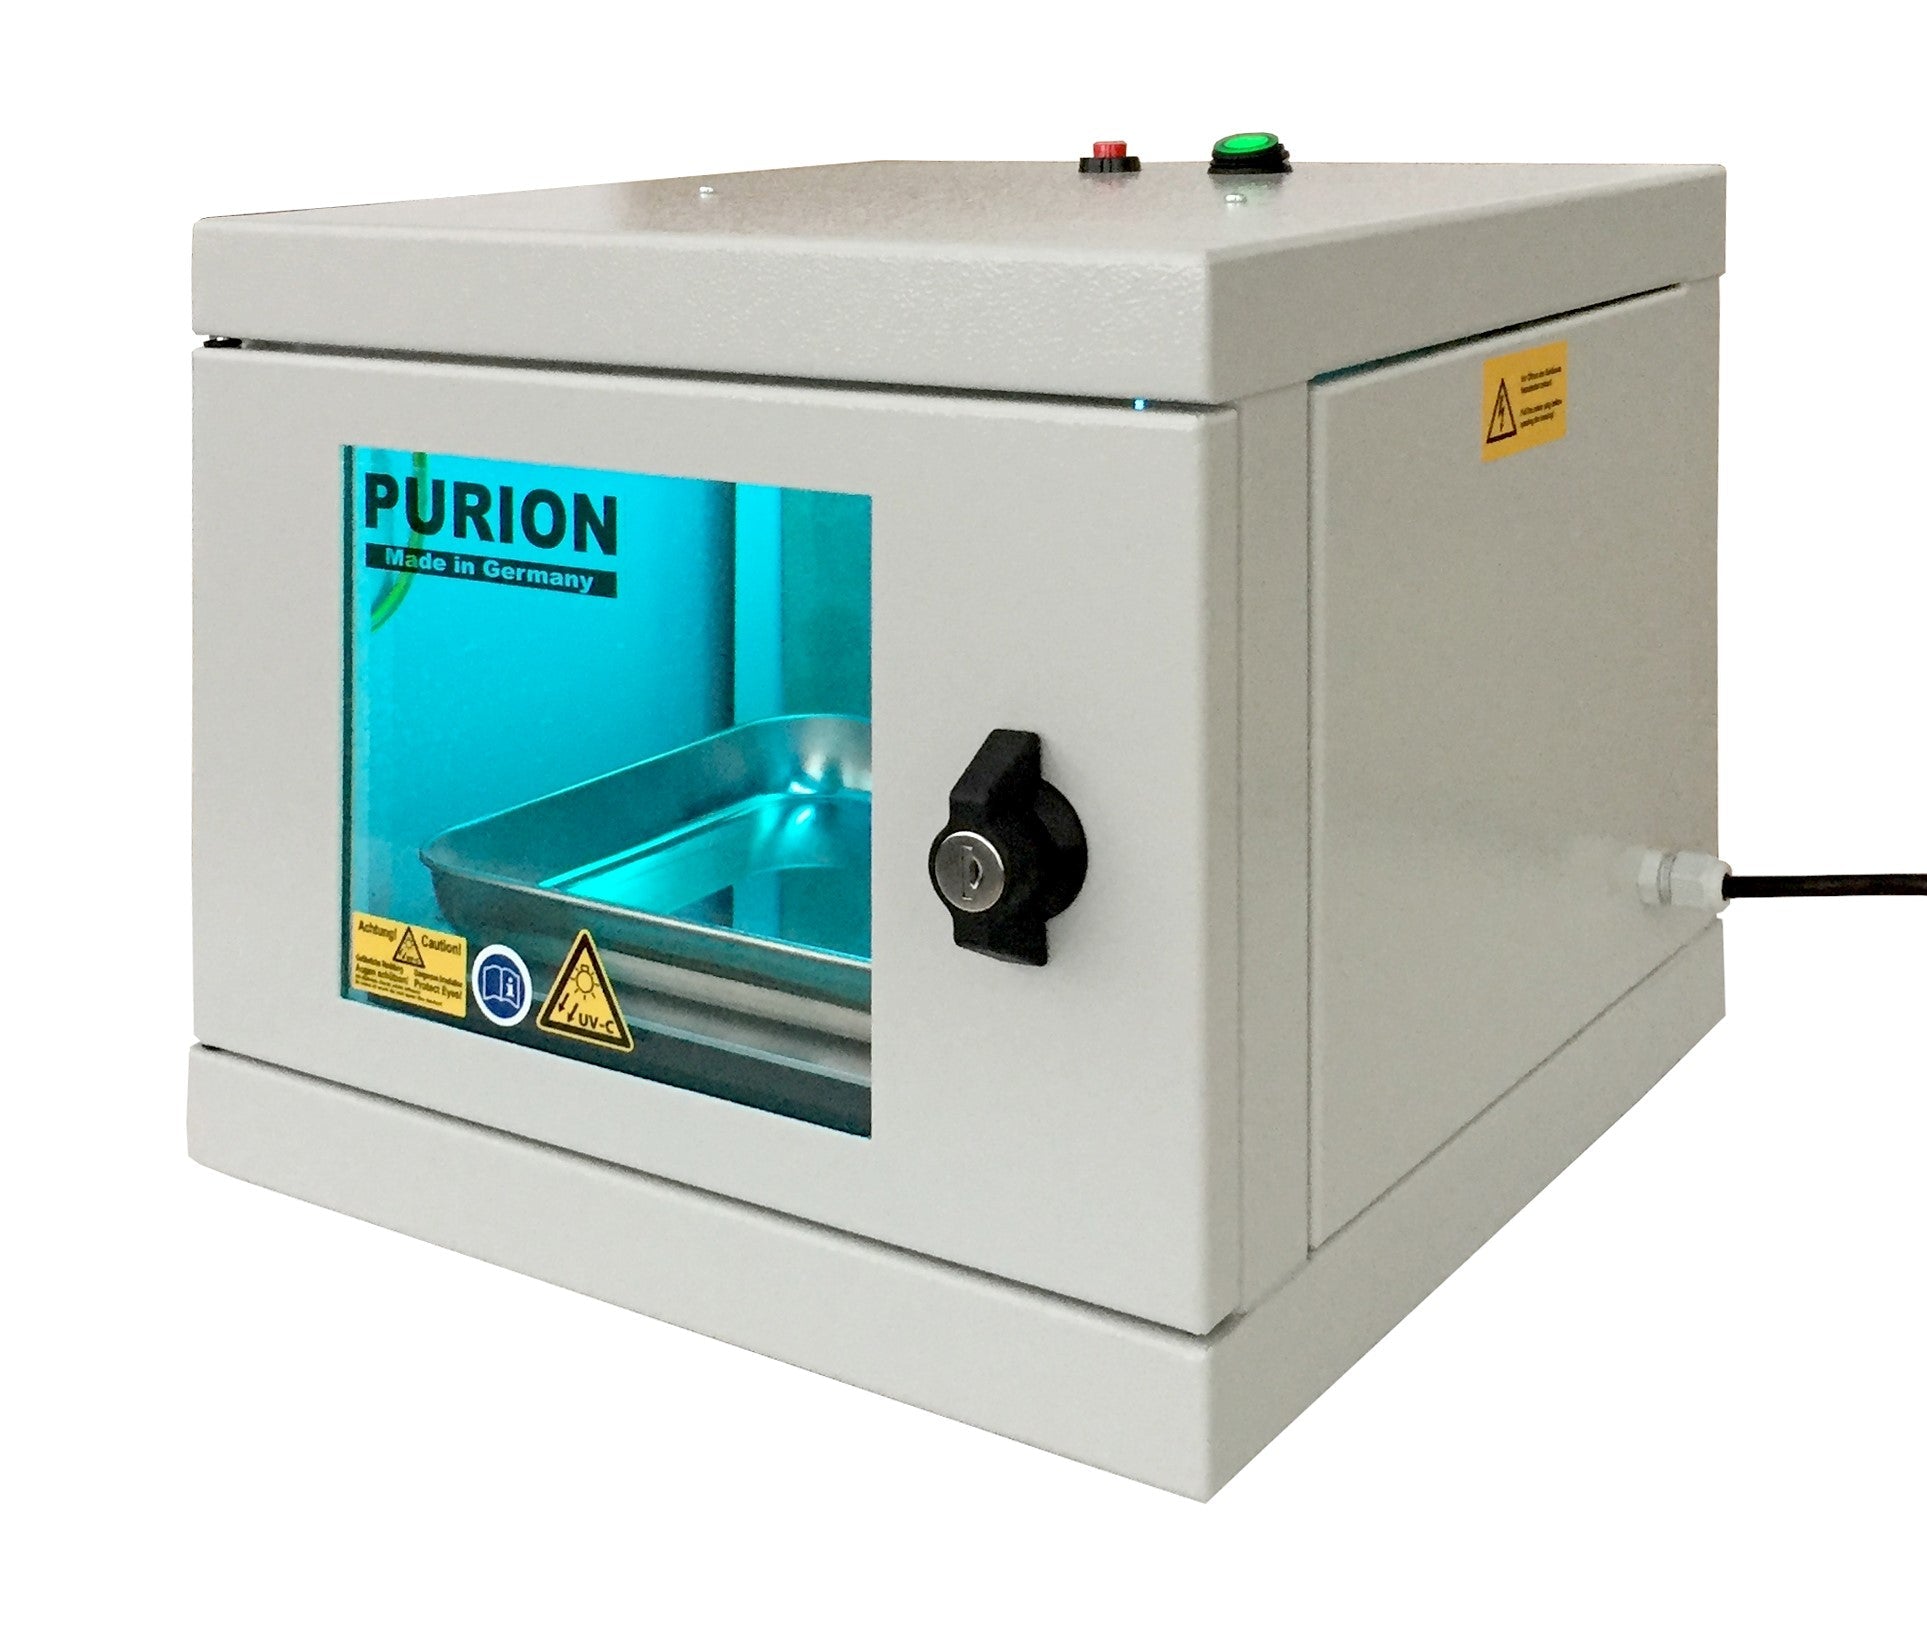 Eine kleine Maschine namens PURION UVC Box Small Plus, entwickelt von der PURION GmbH, zur Desinfektion und Keimbeseitigung mittels UVC-Box-Technologie.